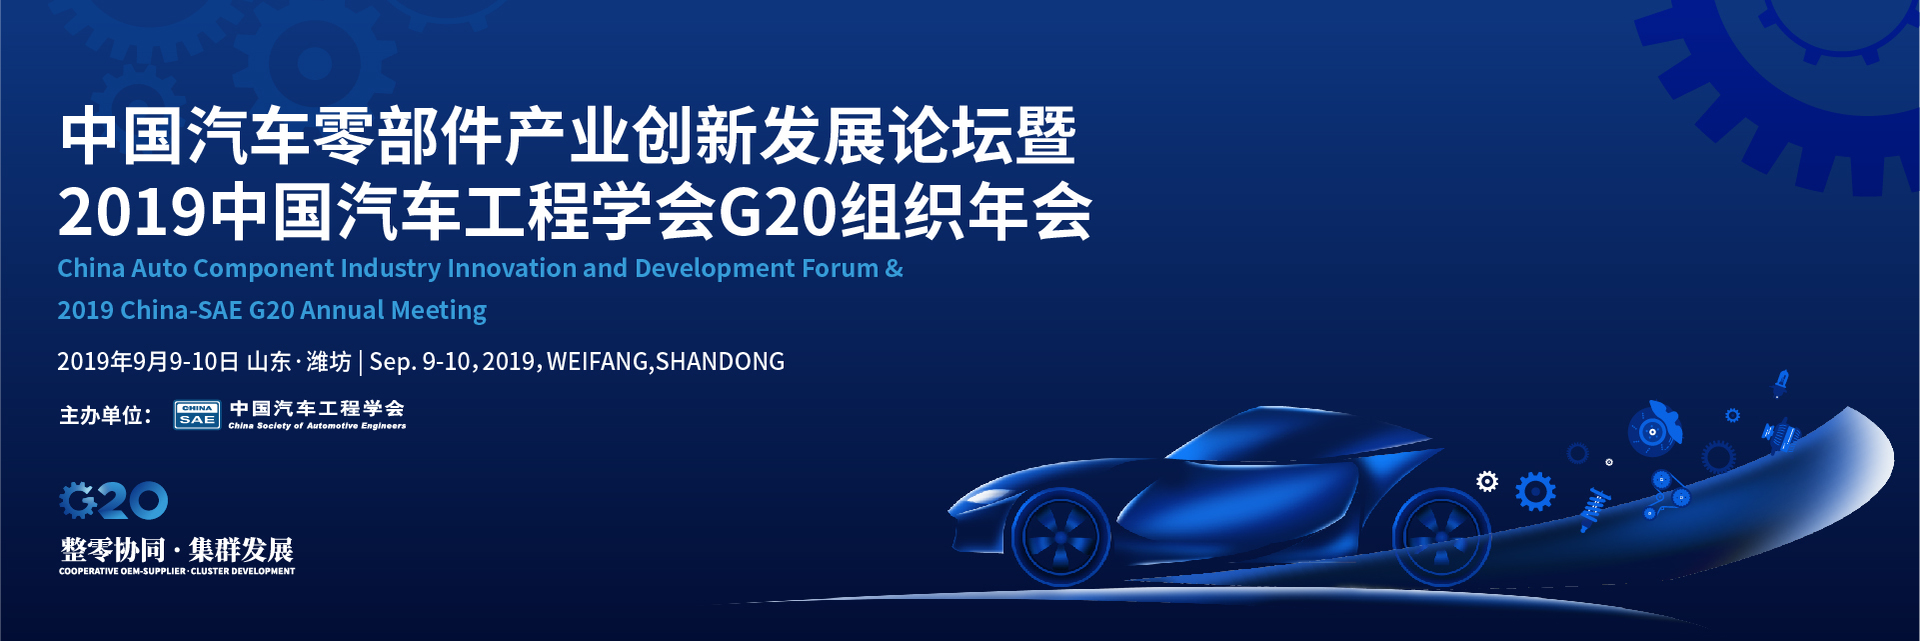 中国汽车零部件产业发展研讨会暨2019中国汽车工程学会G20组织年会